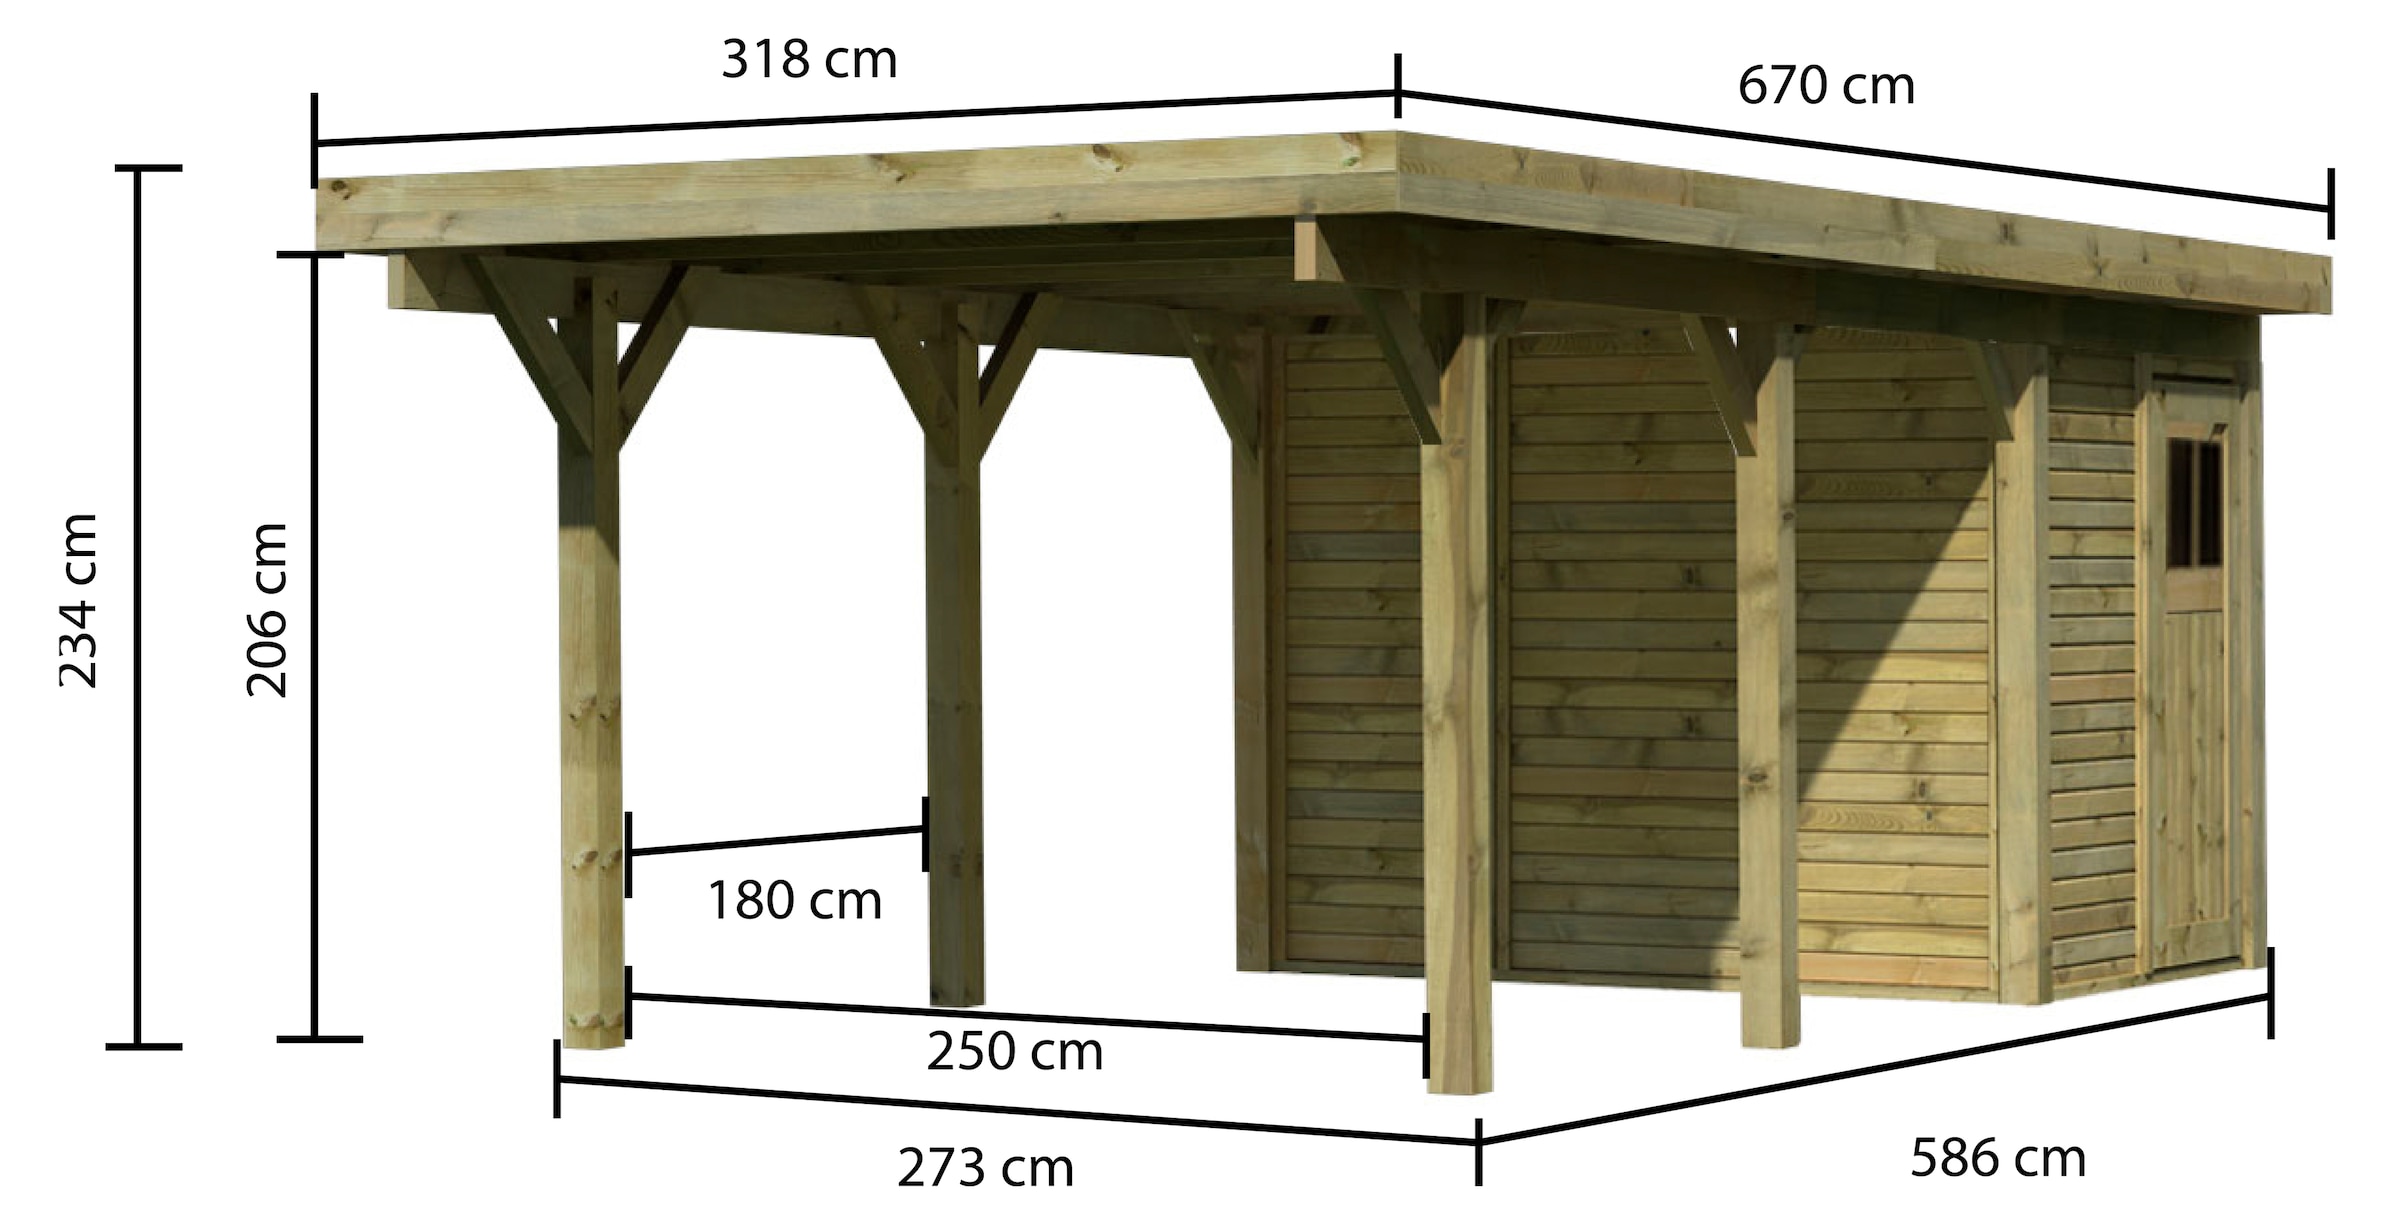 Karibu Einzelcarport »Classic 2«, Holz, 250 cm, natur, mit Geräteraum